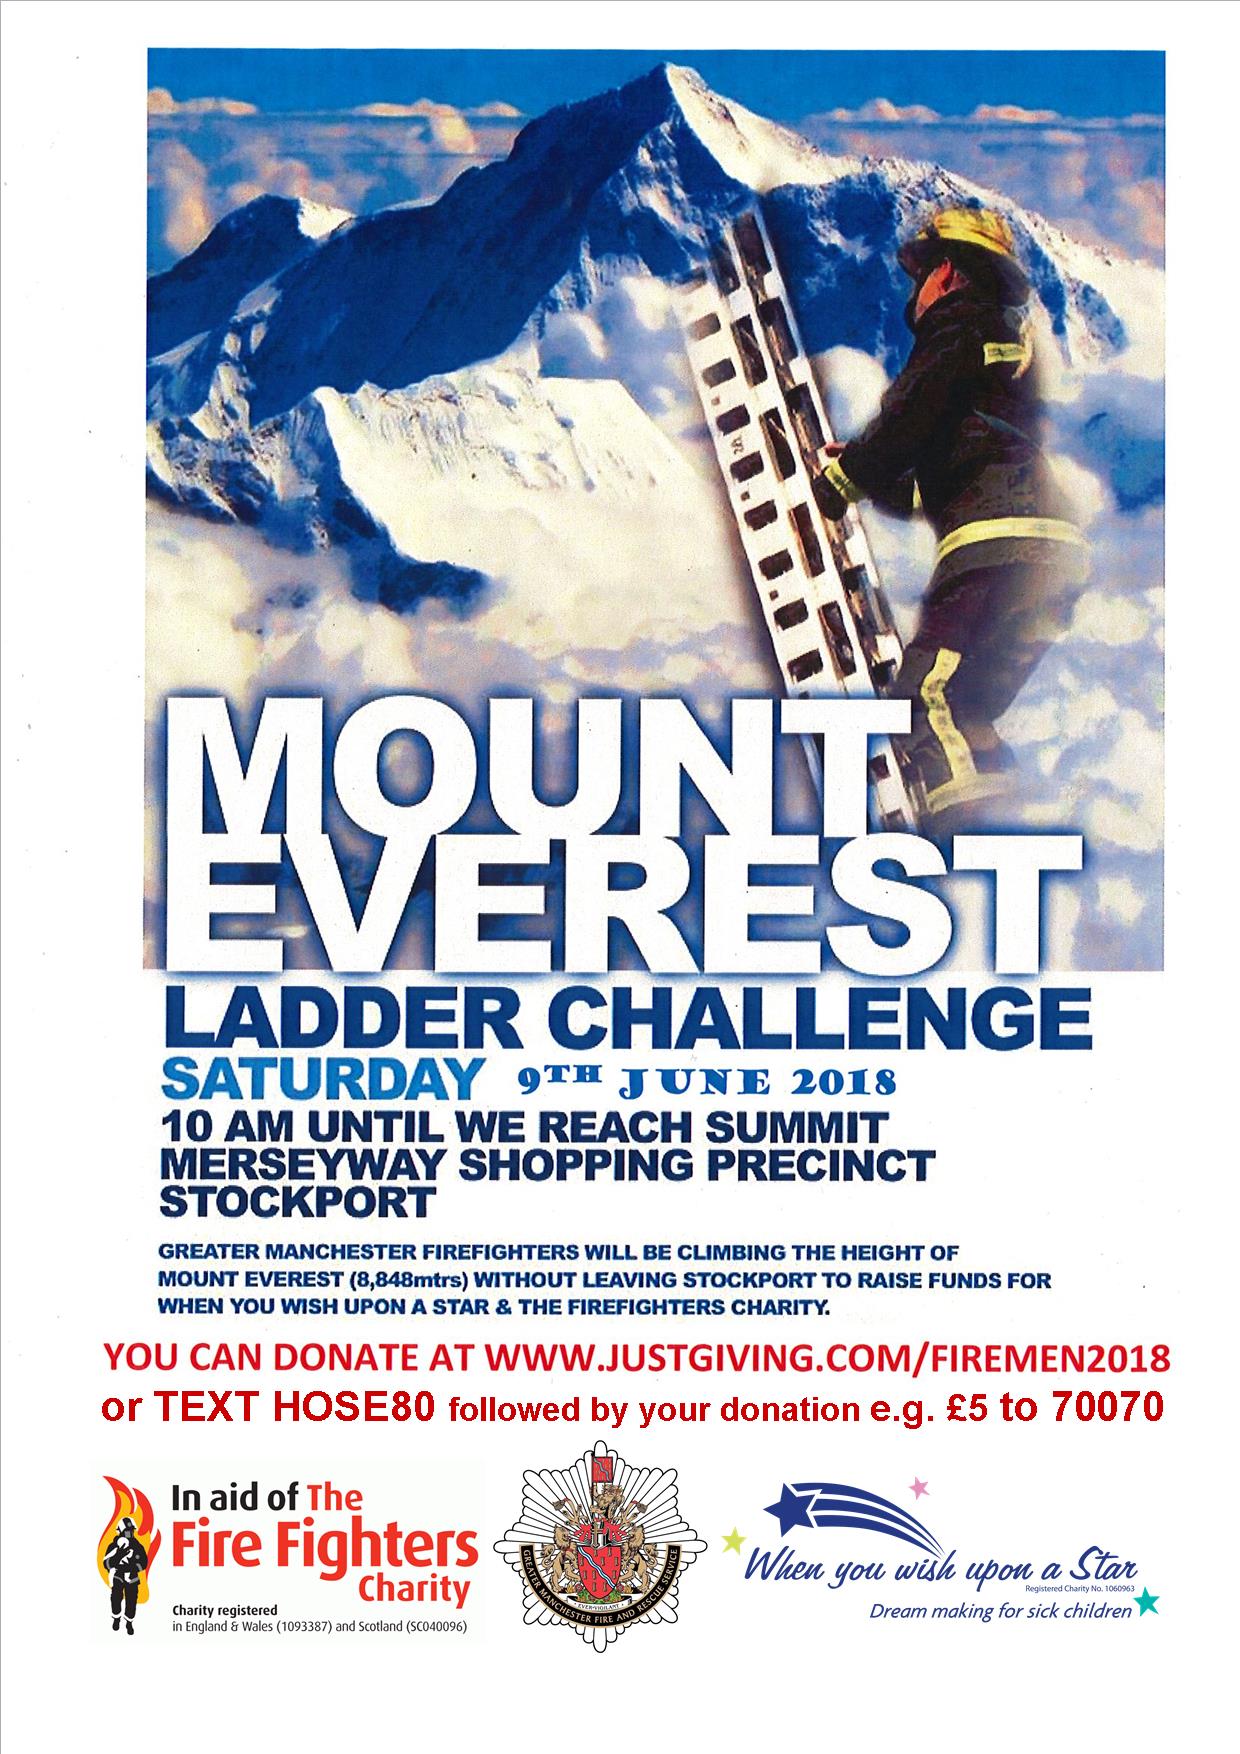 Ladder challenge